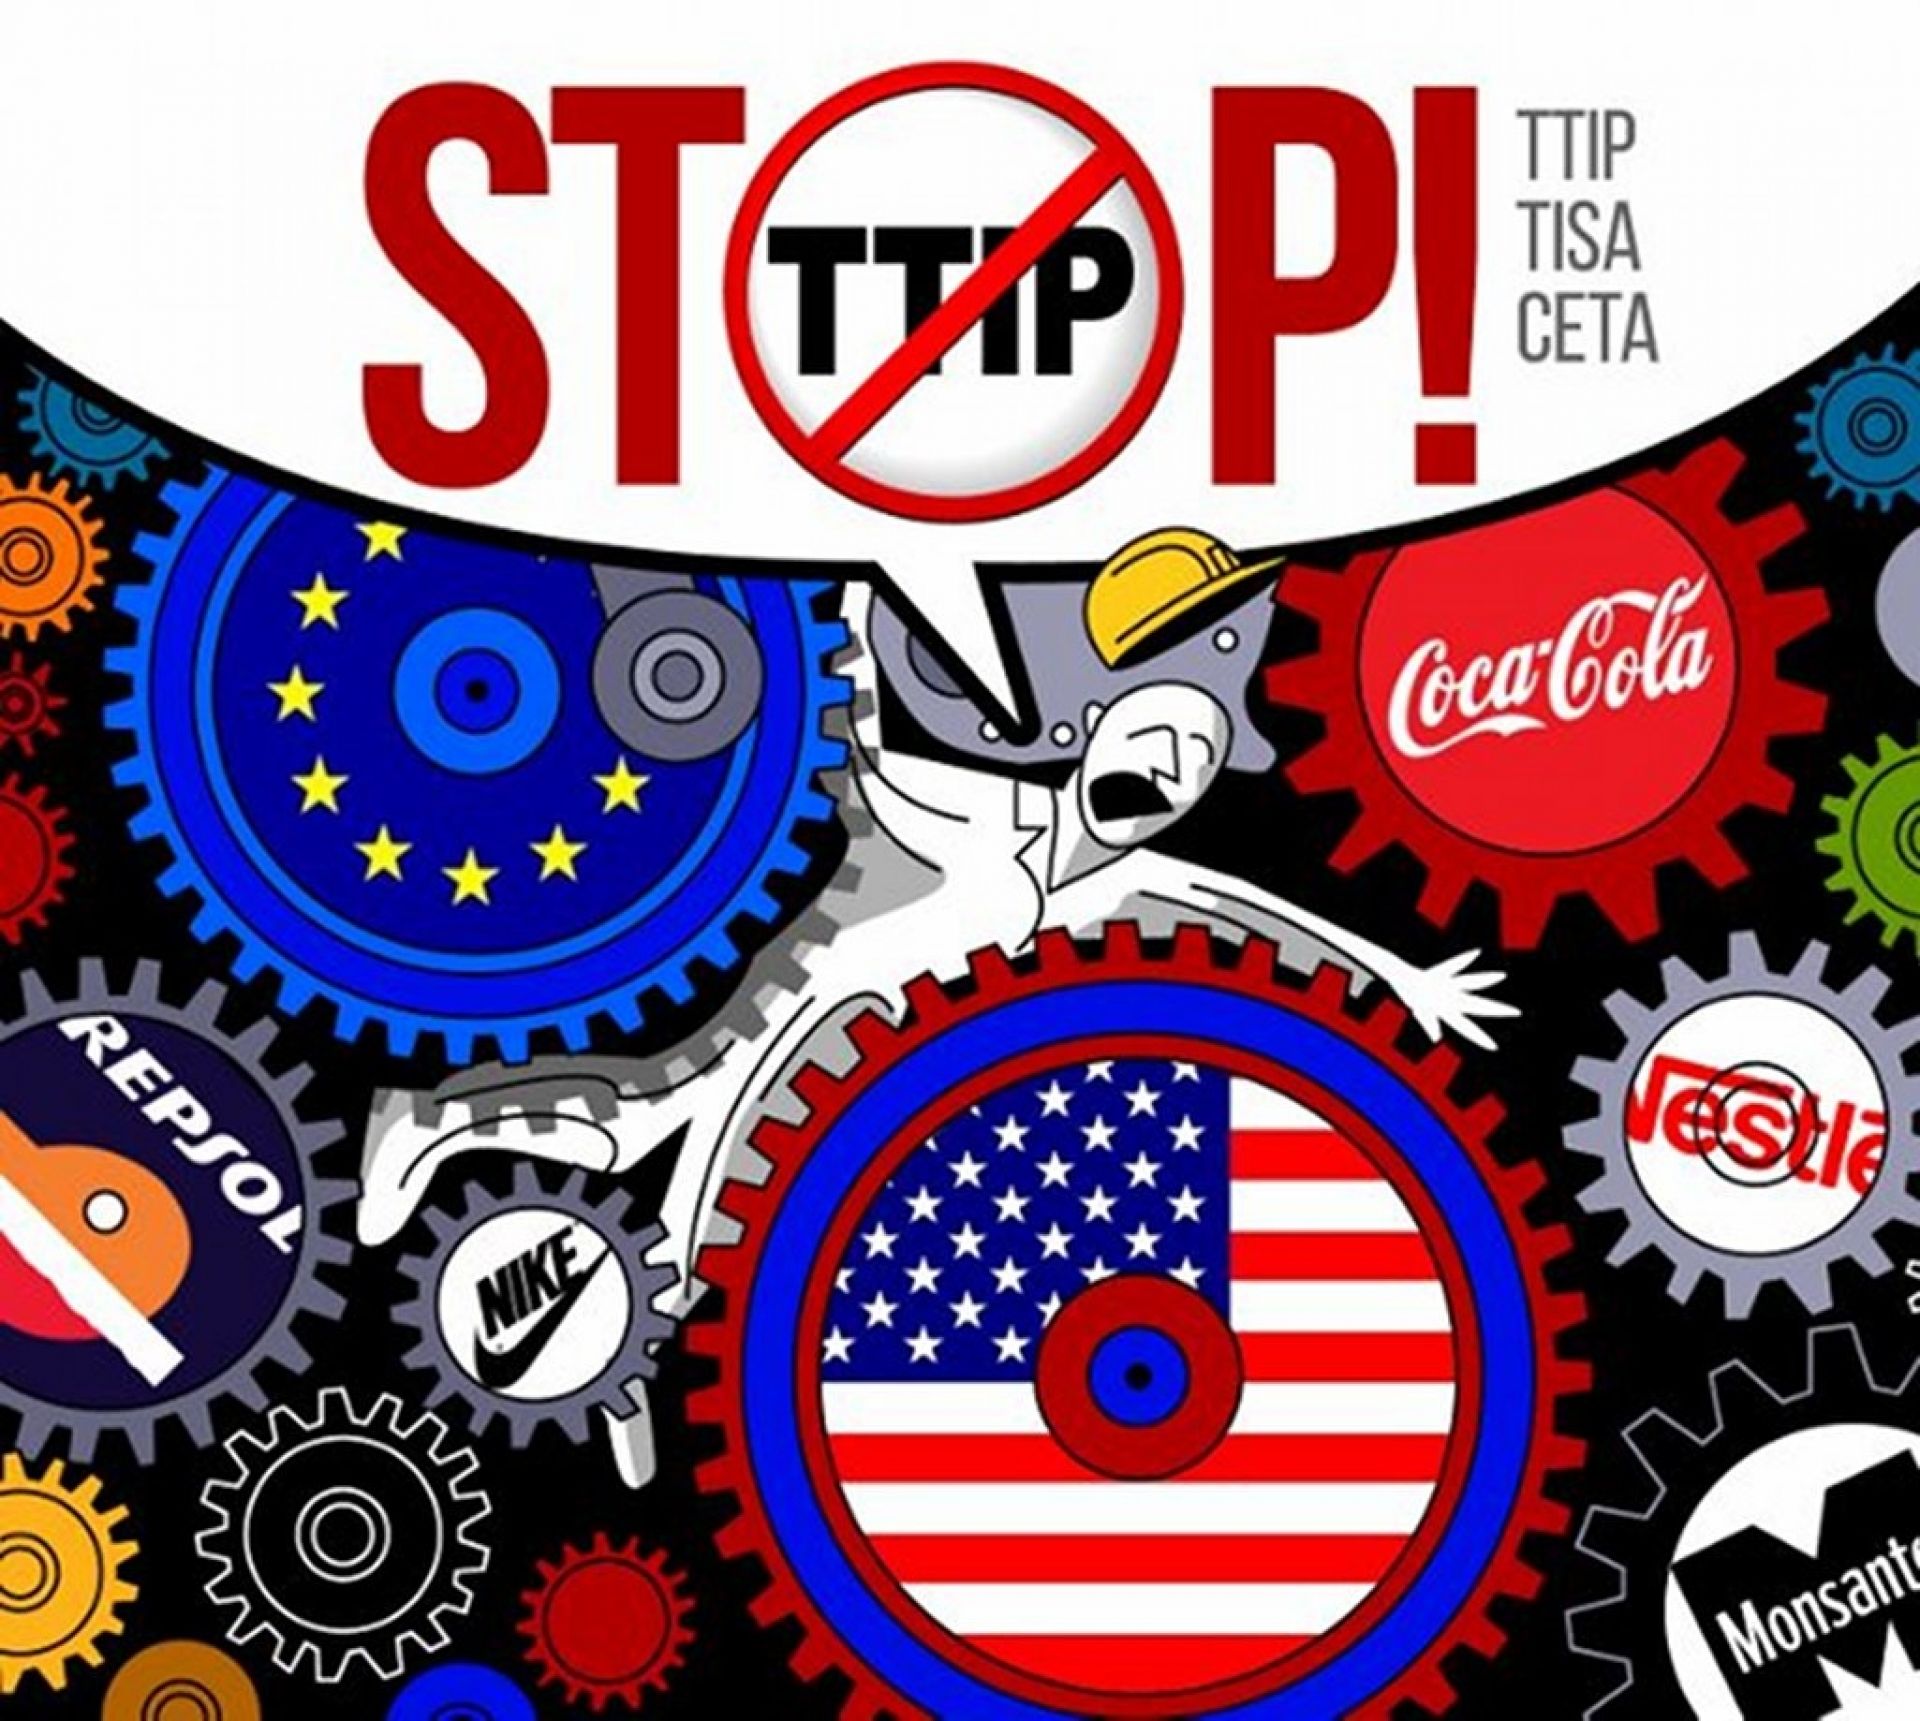 “Le persone e il pianeta prima dei profitti”. Mobilitazione globale contro il TTIP